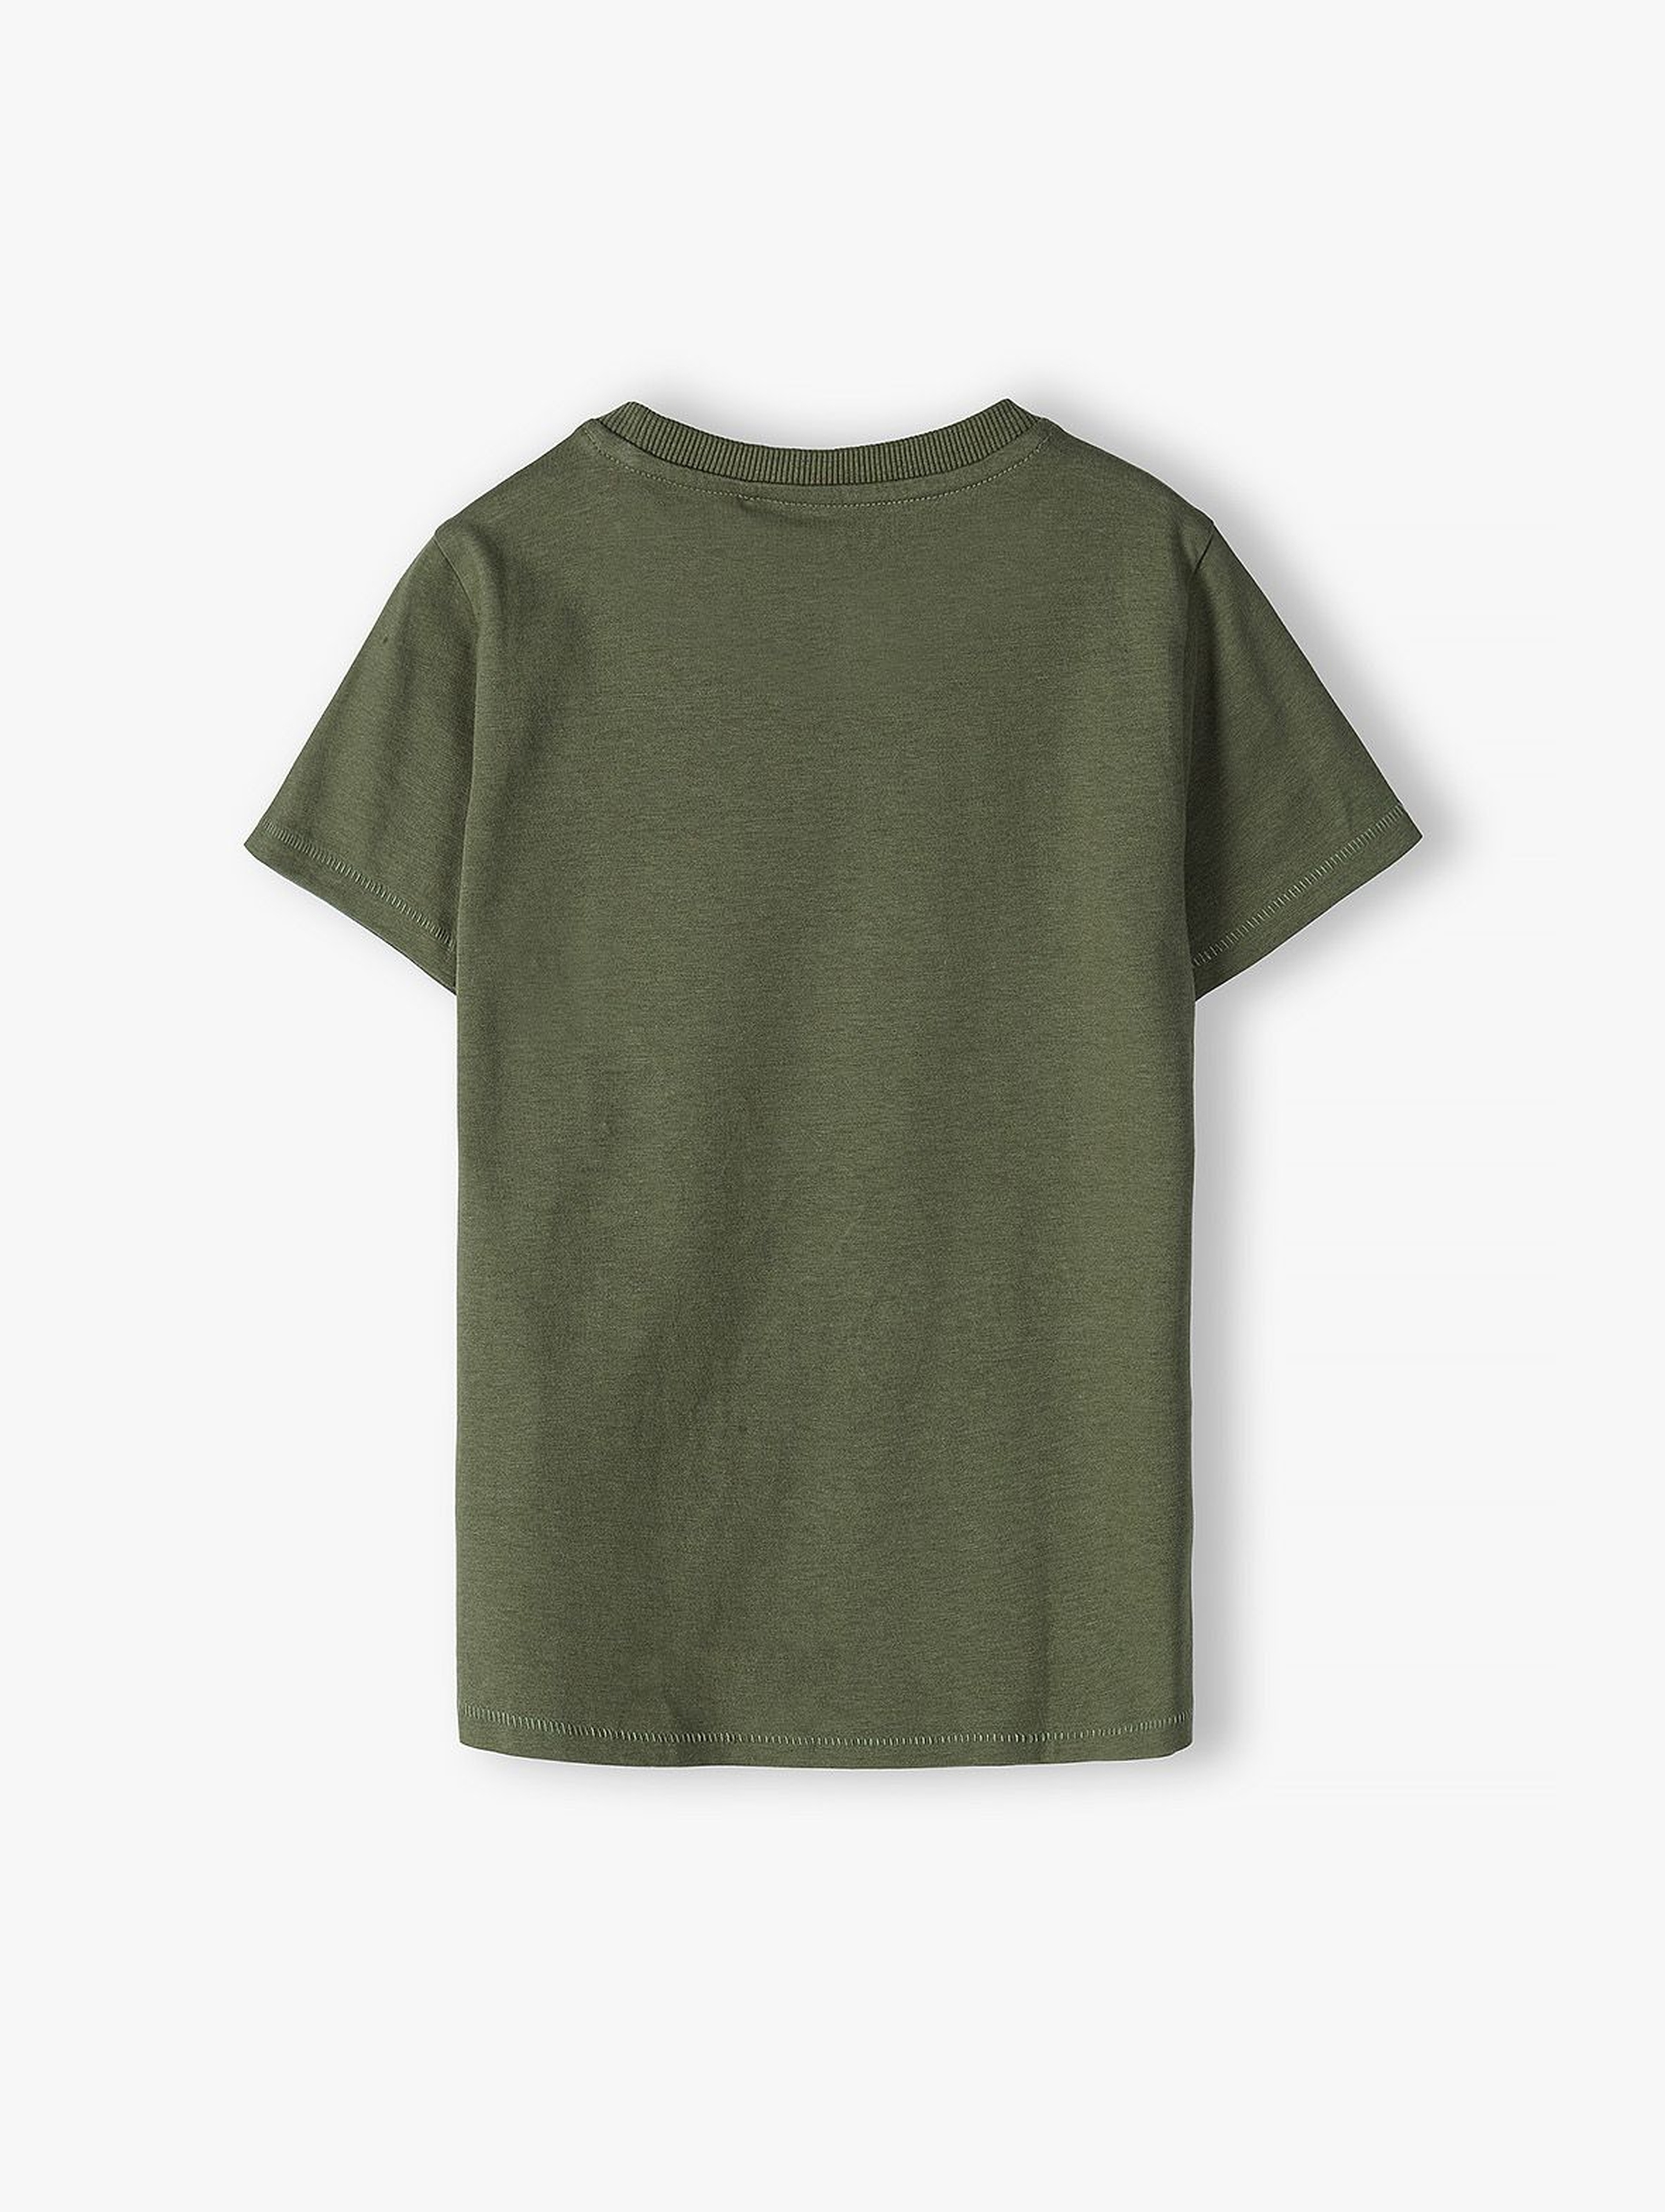 Bawełniany t-shirt chłopięcy w kolorze ciemnej zieleni z Dinozaurem